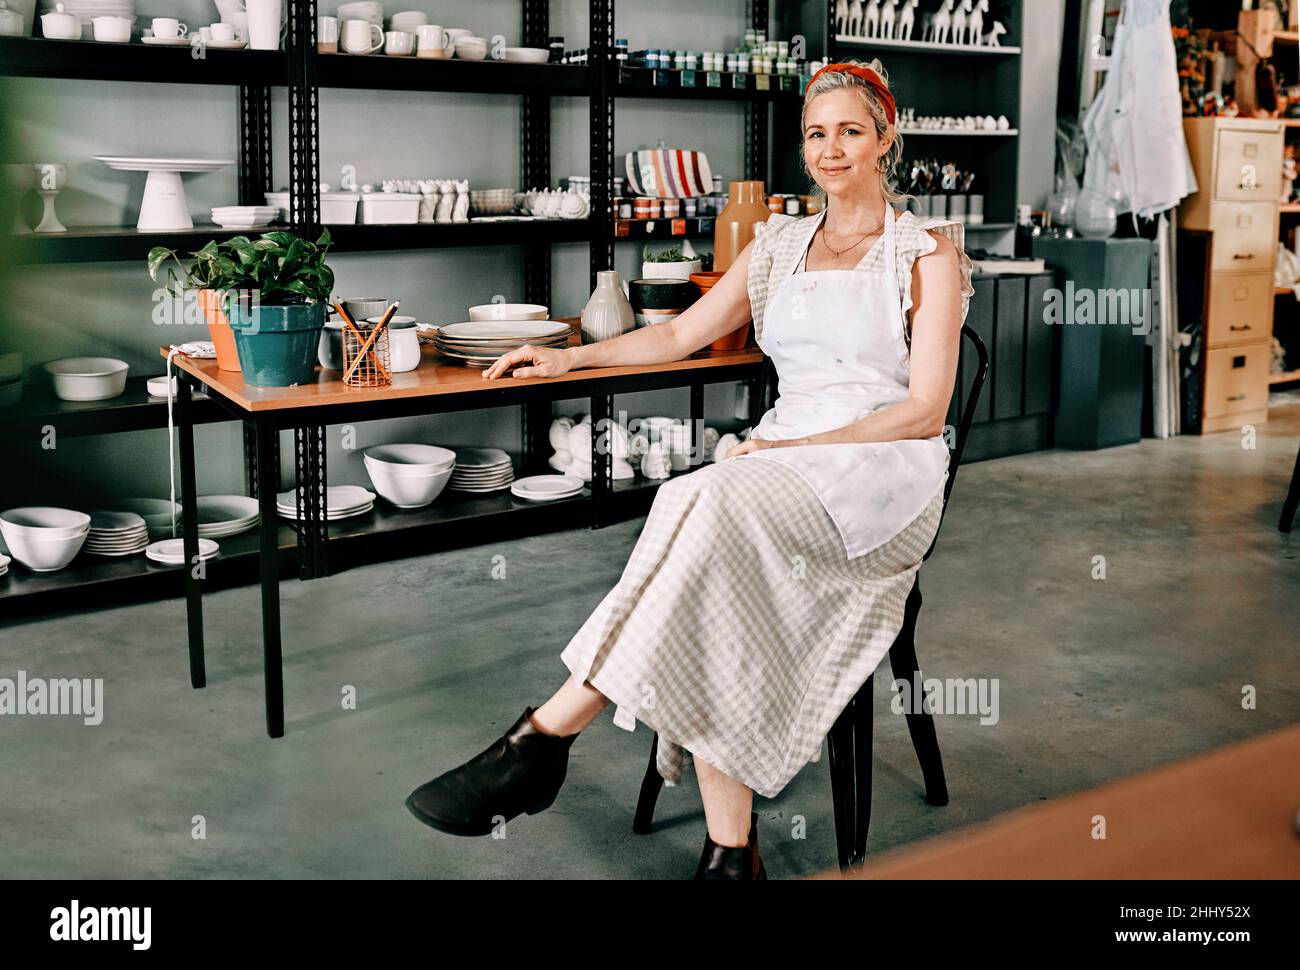 J'ai travaillé dur pour mon studio.Portrait court d'une femme mûre attrayante assise seule dans son atelier de poterie pendant la journée. Banque D'Images